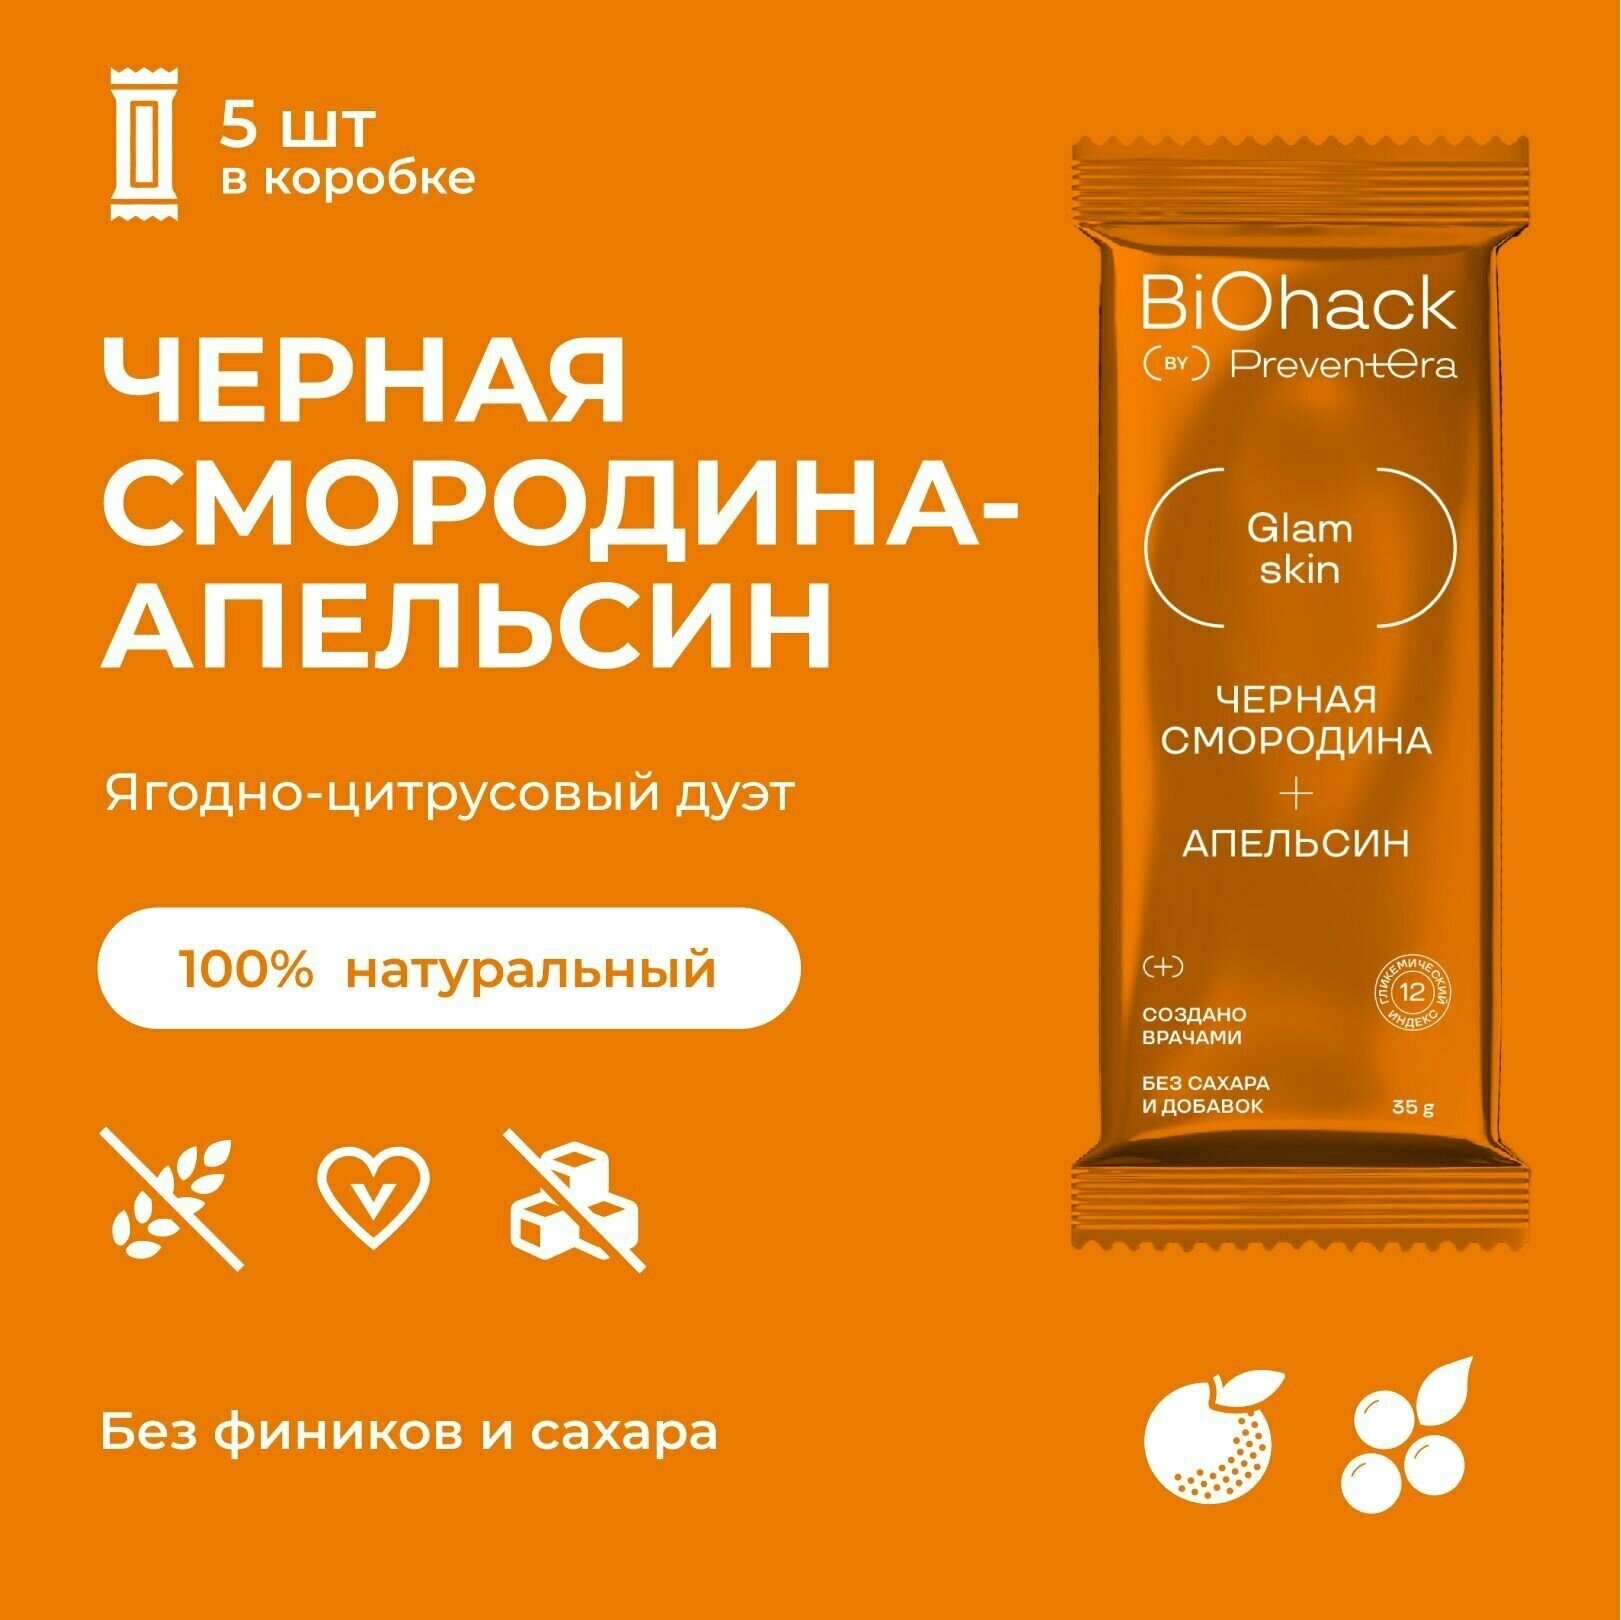 Батончик Черная смородина-Апельсин PreventEra(BioHack) 5 шт. Спортивный батончик без сахара, без глютена, веган. Натуральные ПП сладости.